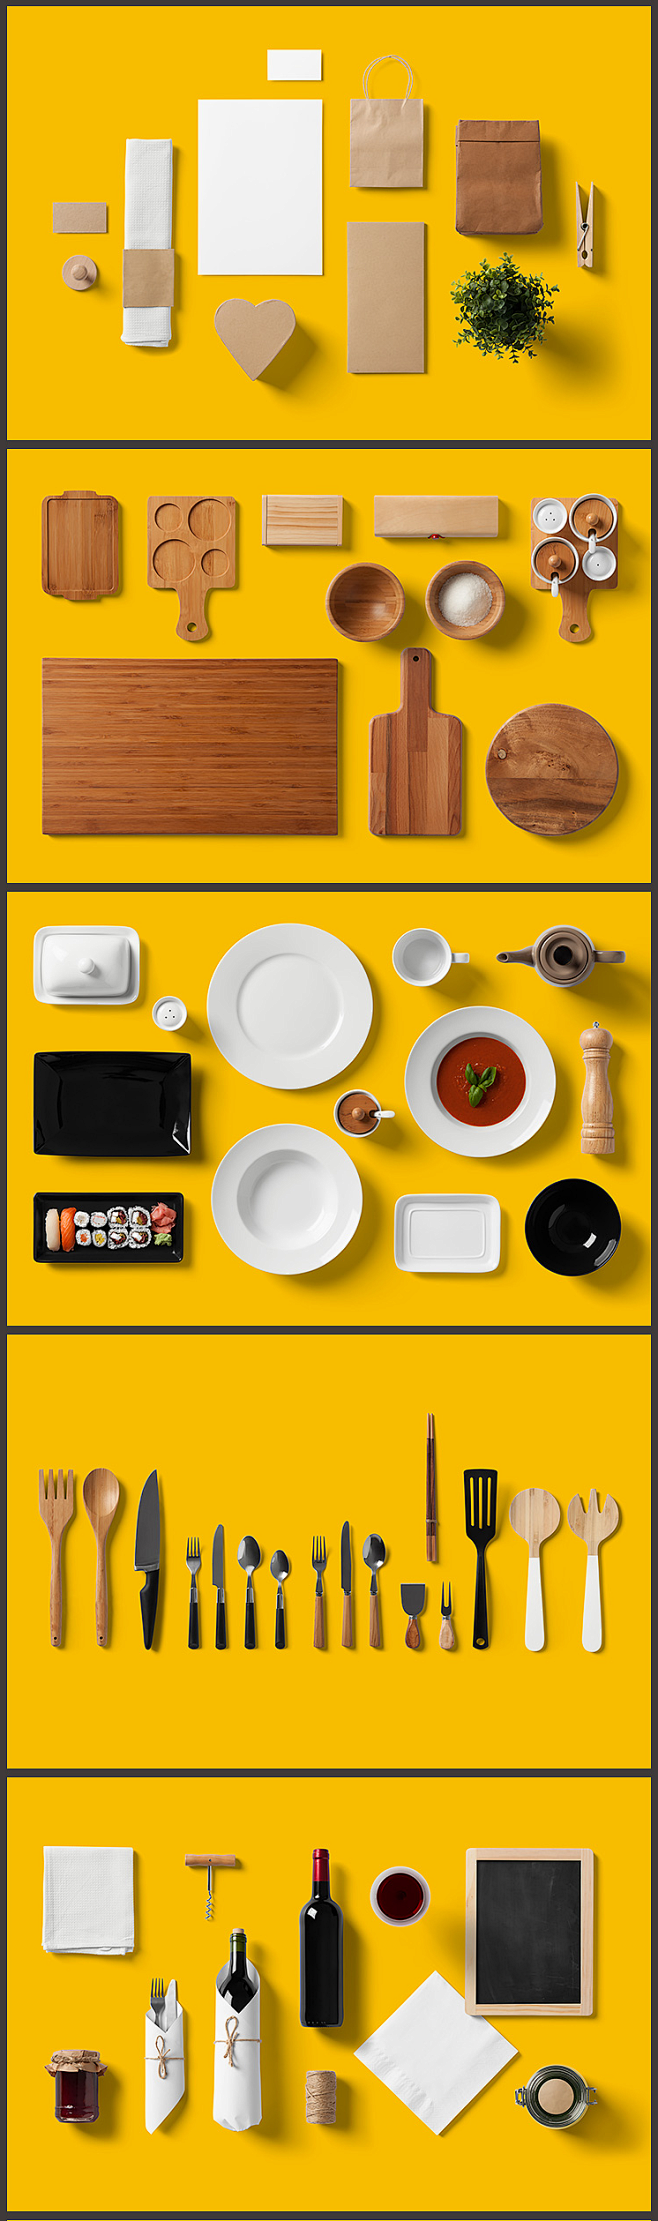 中式餐饮VI素材设计贴图模板PSD样机效...